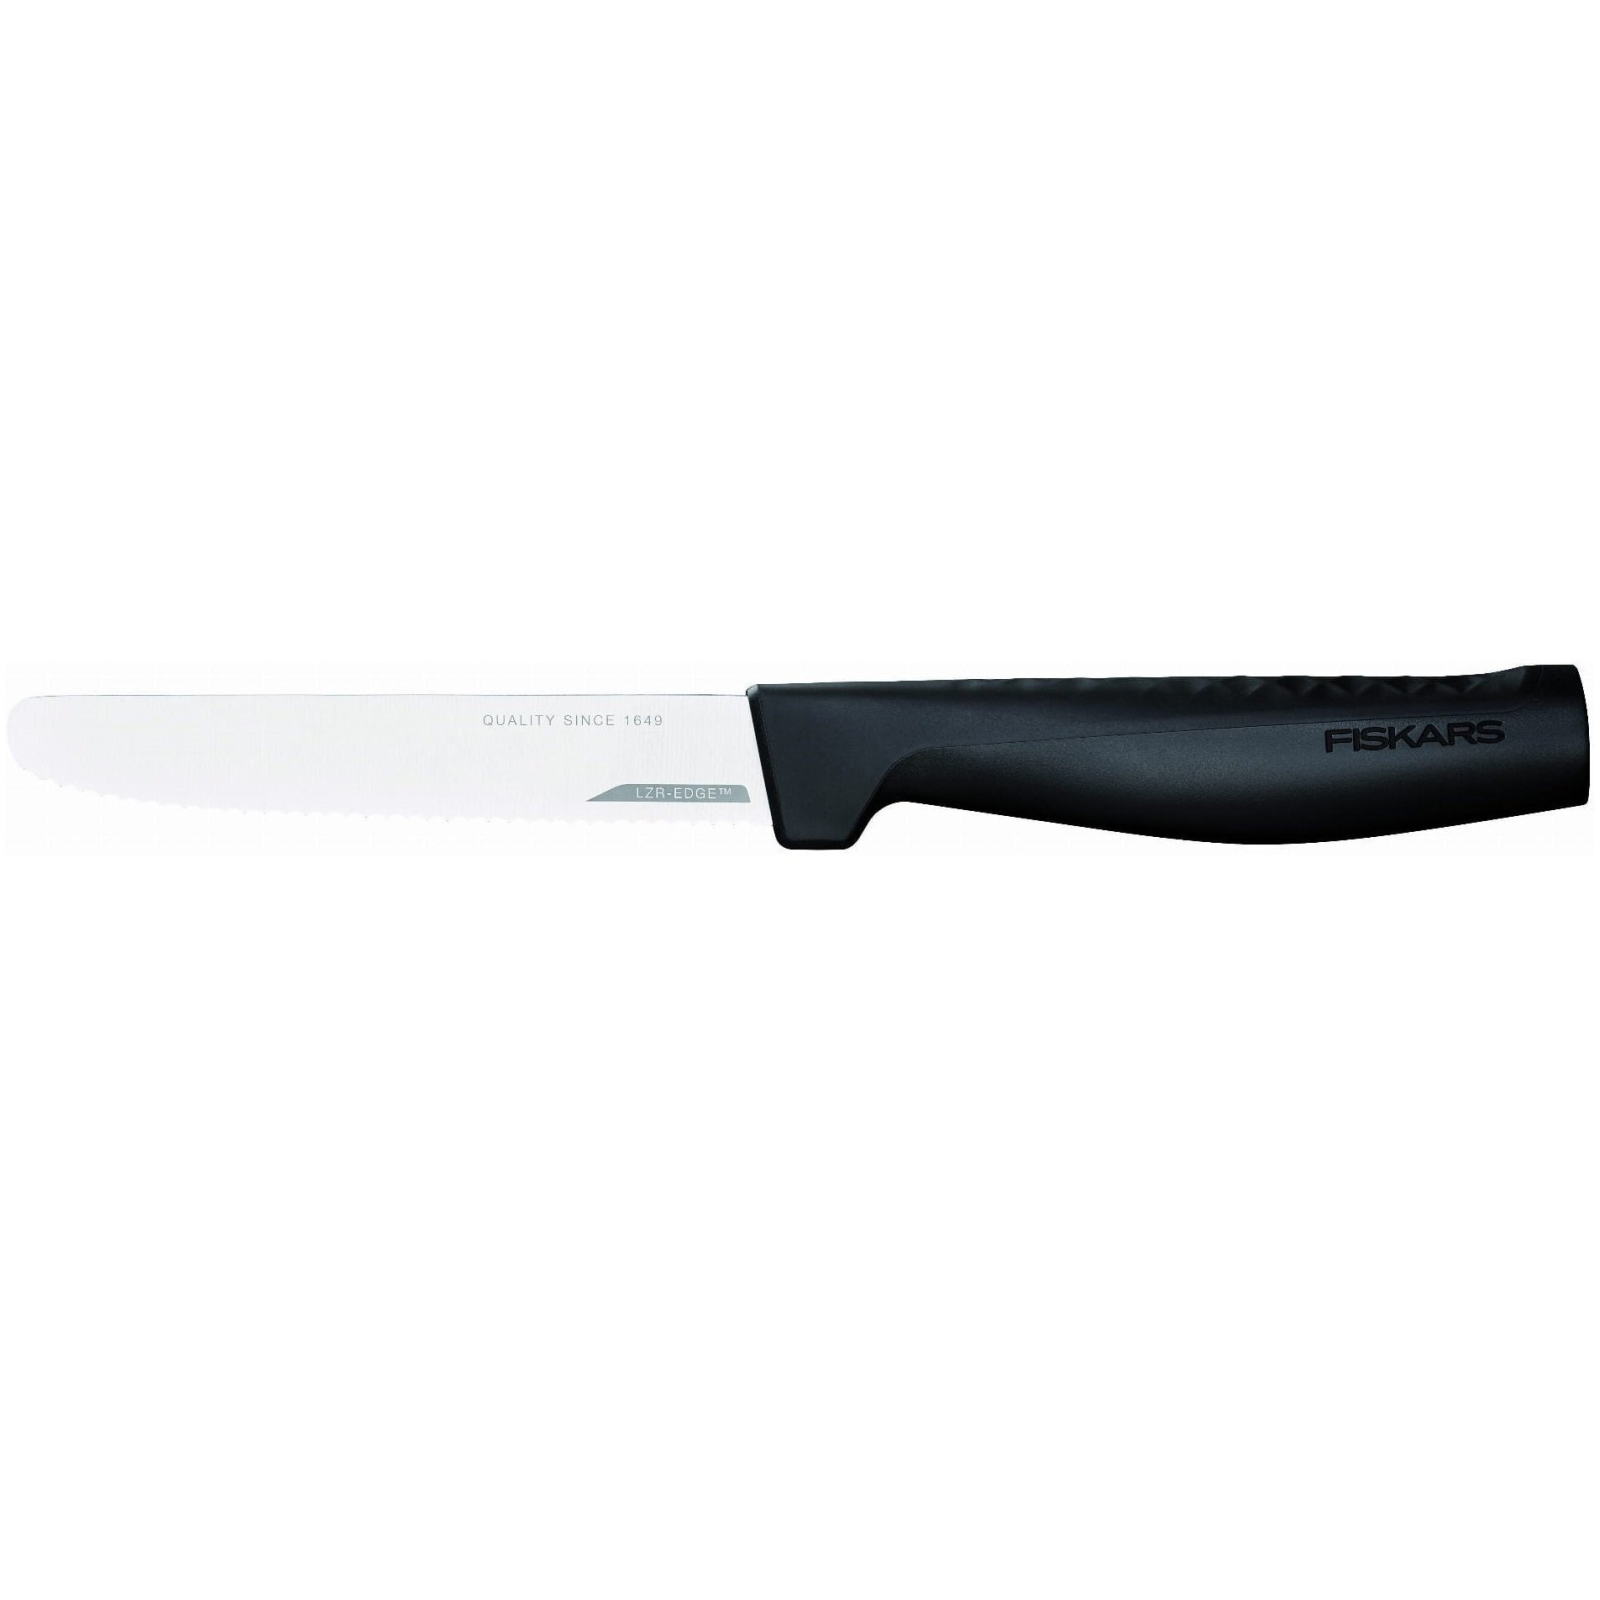 Кухонный нож Fiskars Hard Edge 13,5 см (1051749)